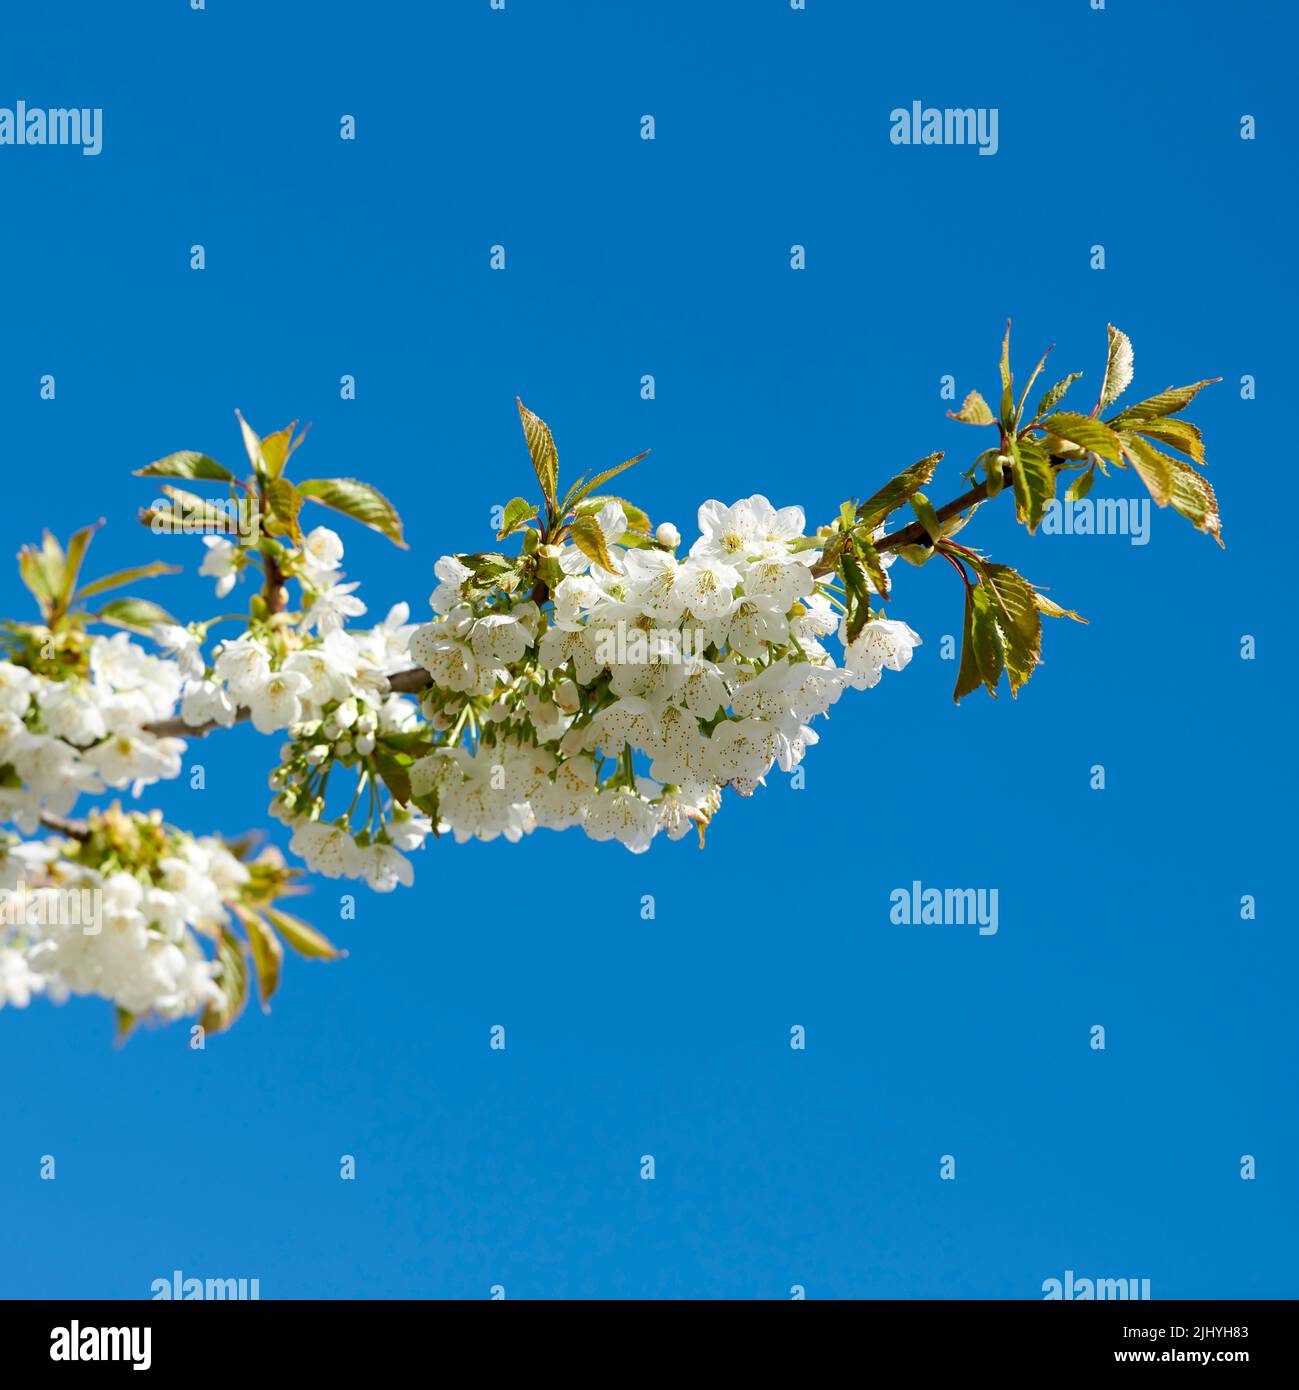 Vue sur les fleurs blanches qui poussent sur une tige de cerisier ou de pommier dans un verger de fruits d'en haut. Groupe de fleurs de printemps fraîches et délicates et de feuilles isolées Banque D'Images